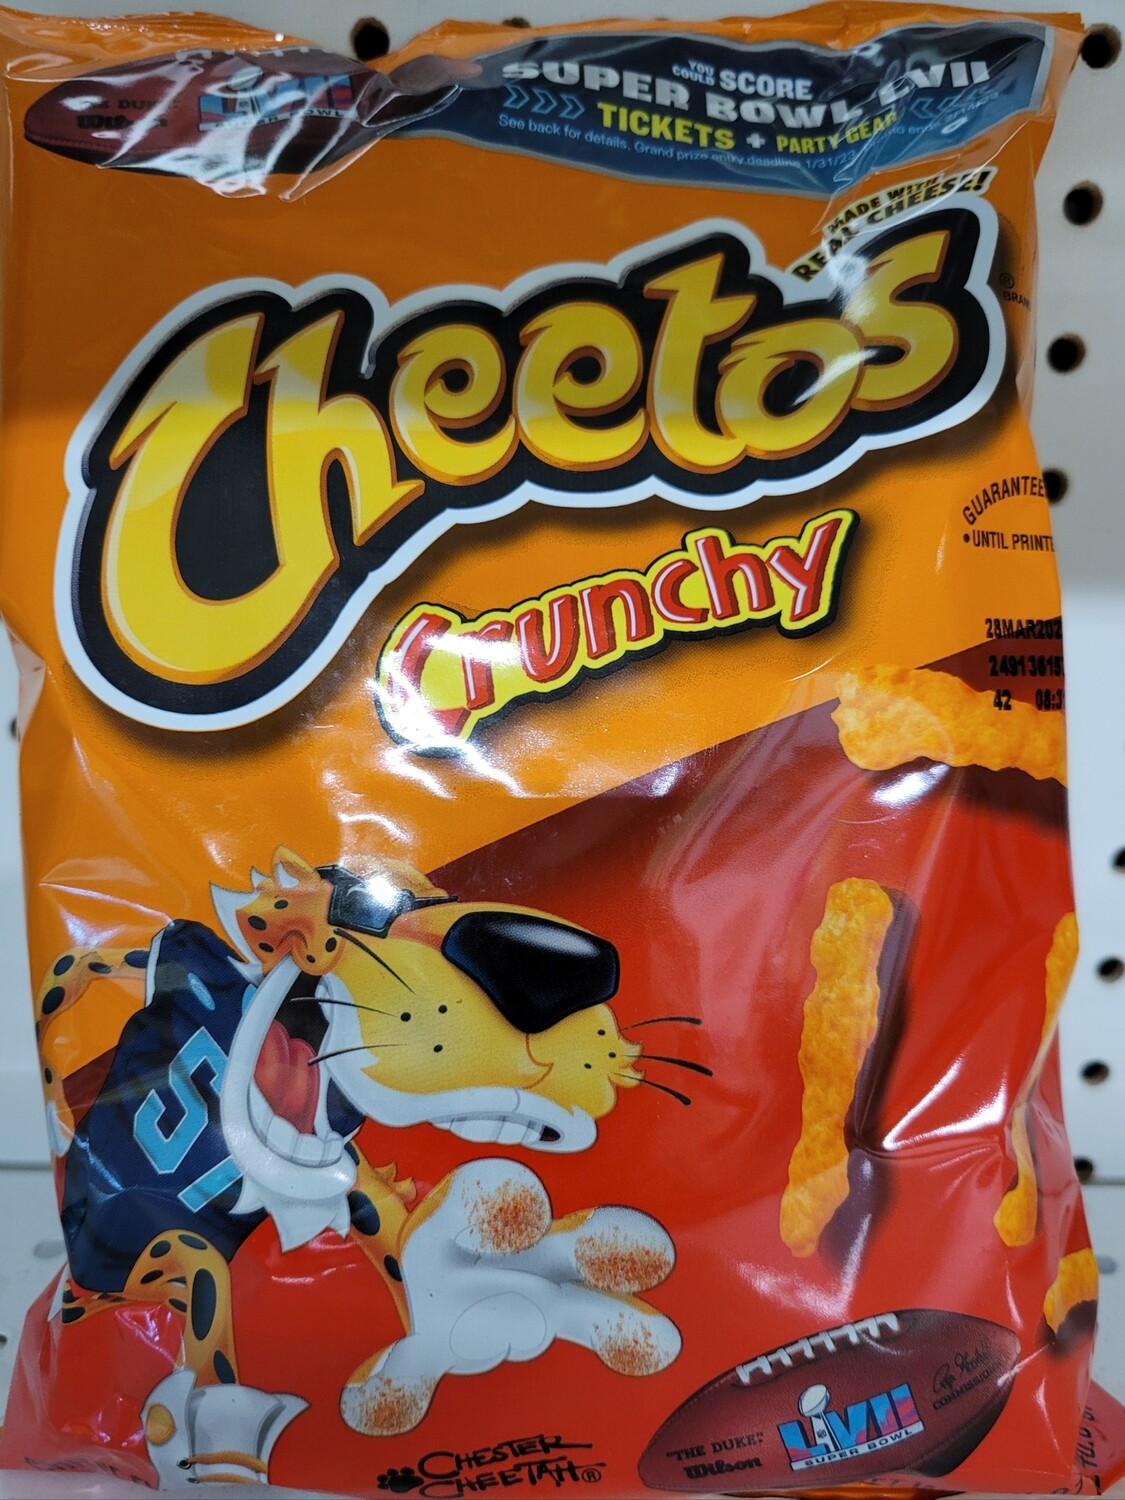 8.5oz Cheetos Crunchy